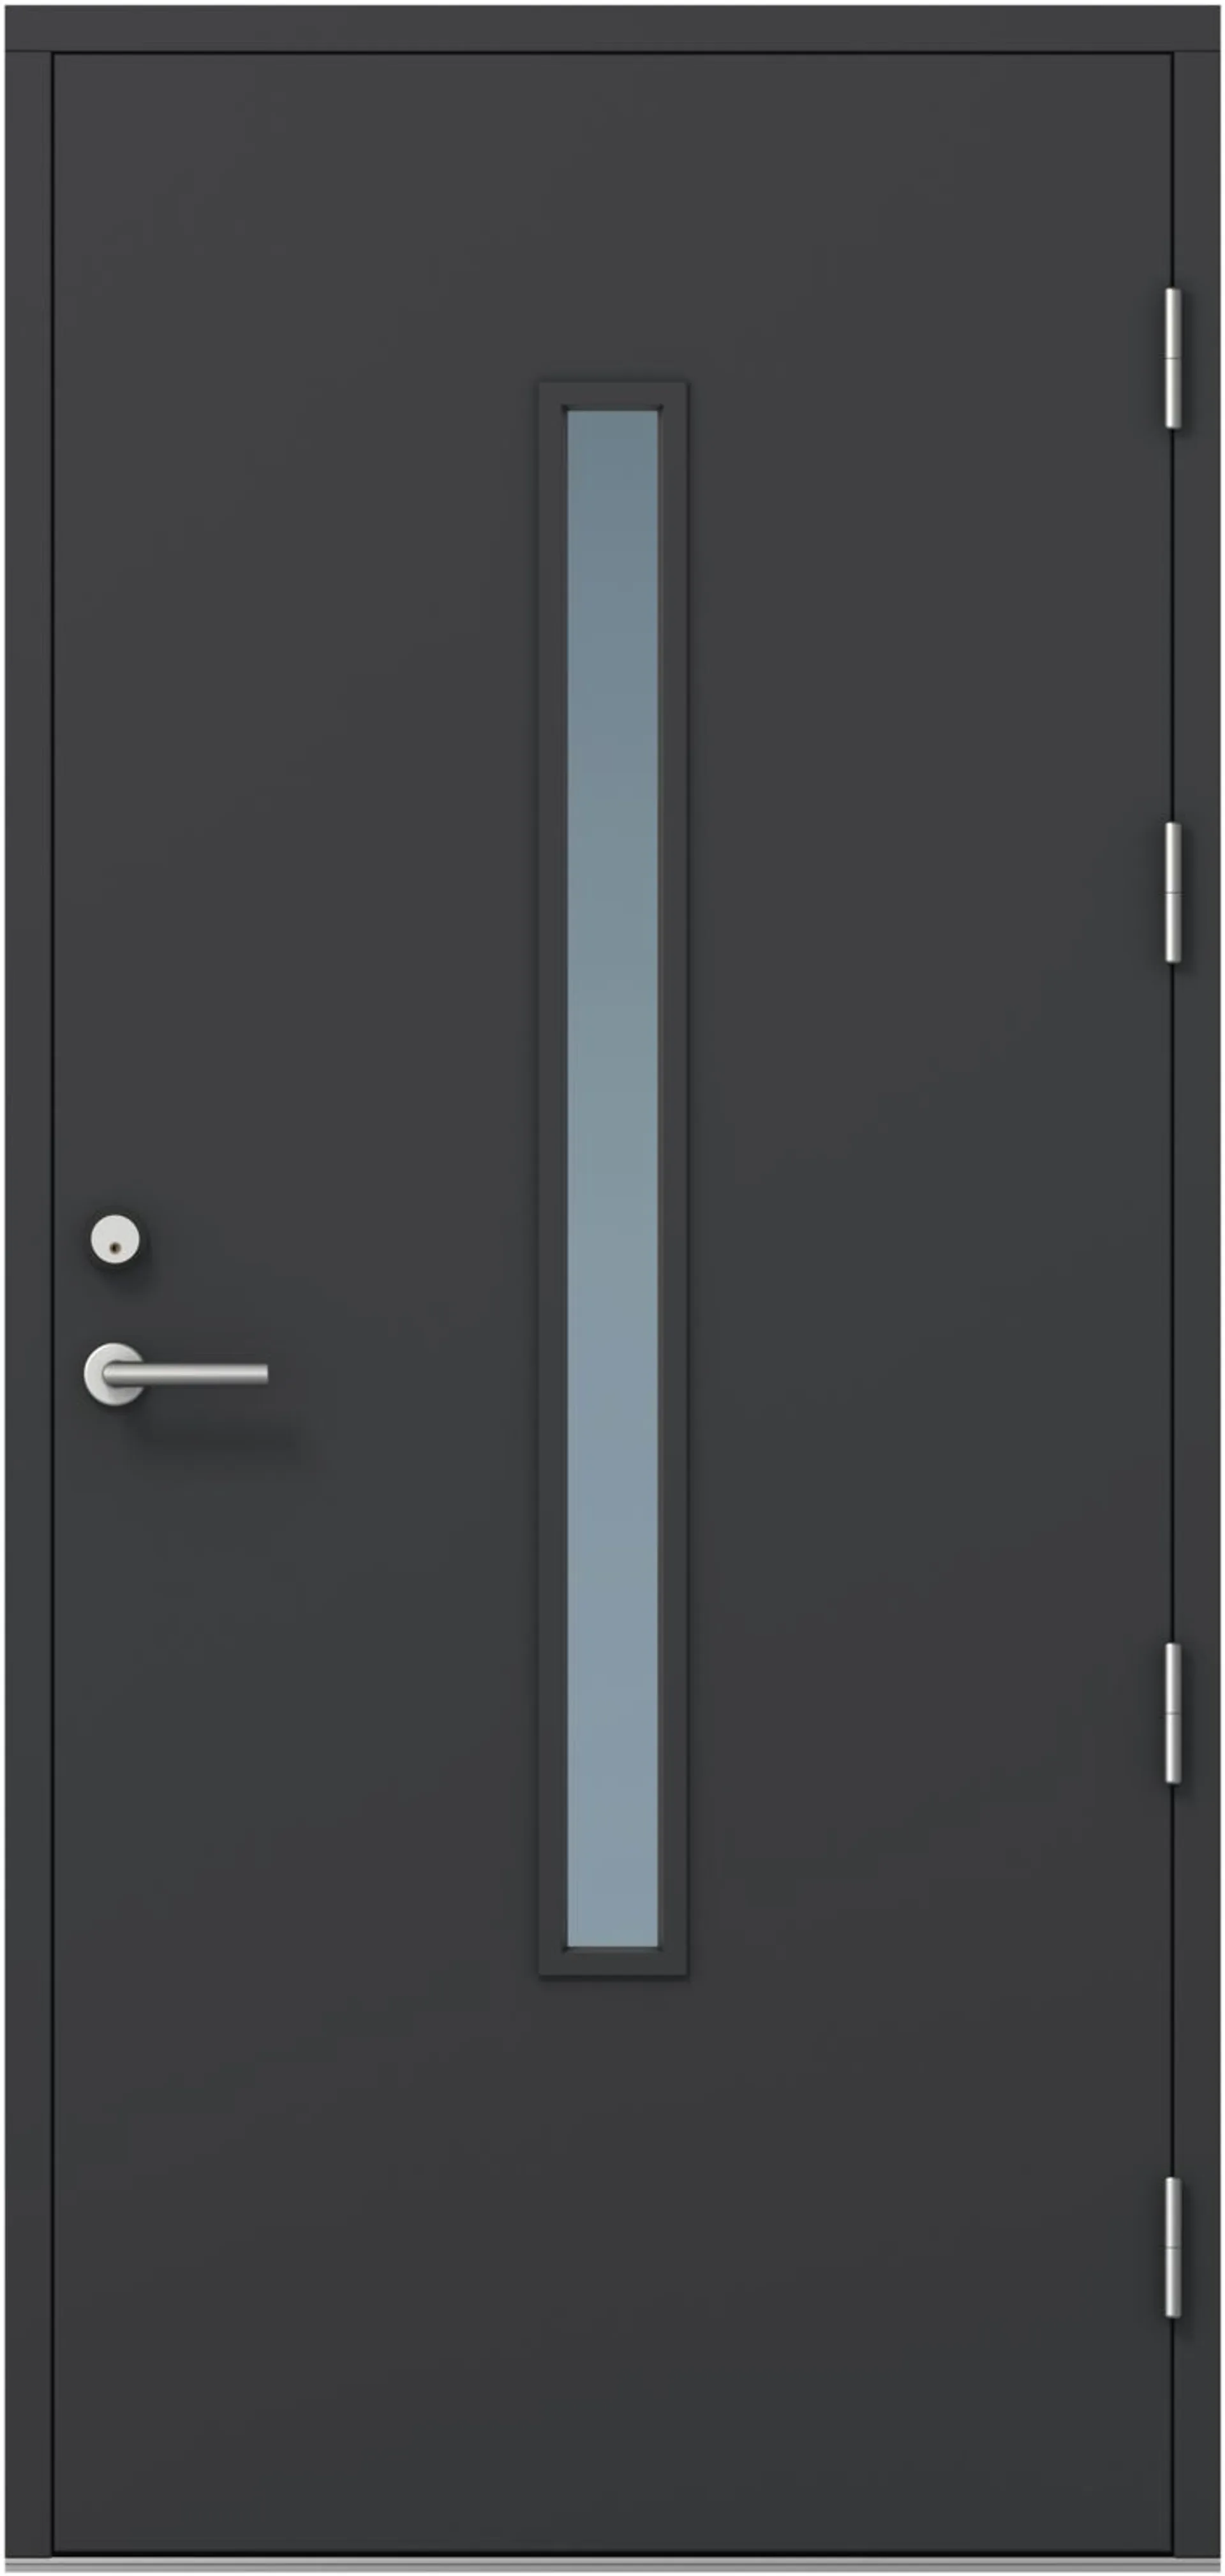 KASKI-ulko-ovi FE-810 pitkällä lasilla, tumman harmaa, 10x21 oikea, kynnys öljytty koivu, karmi 115mm